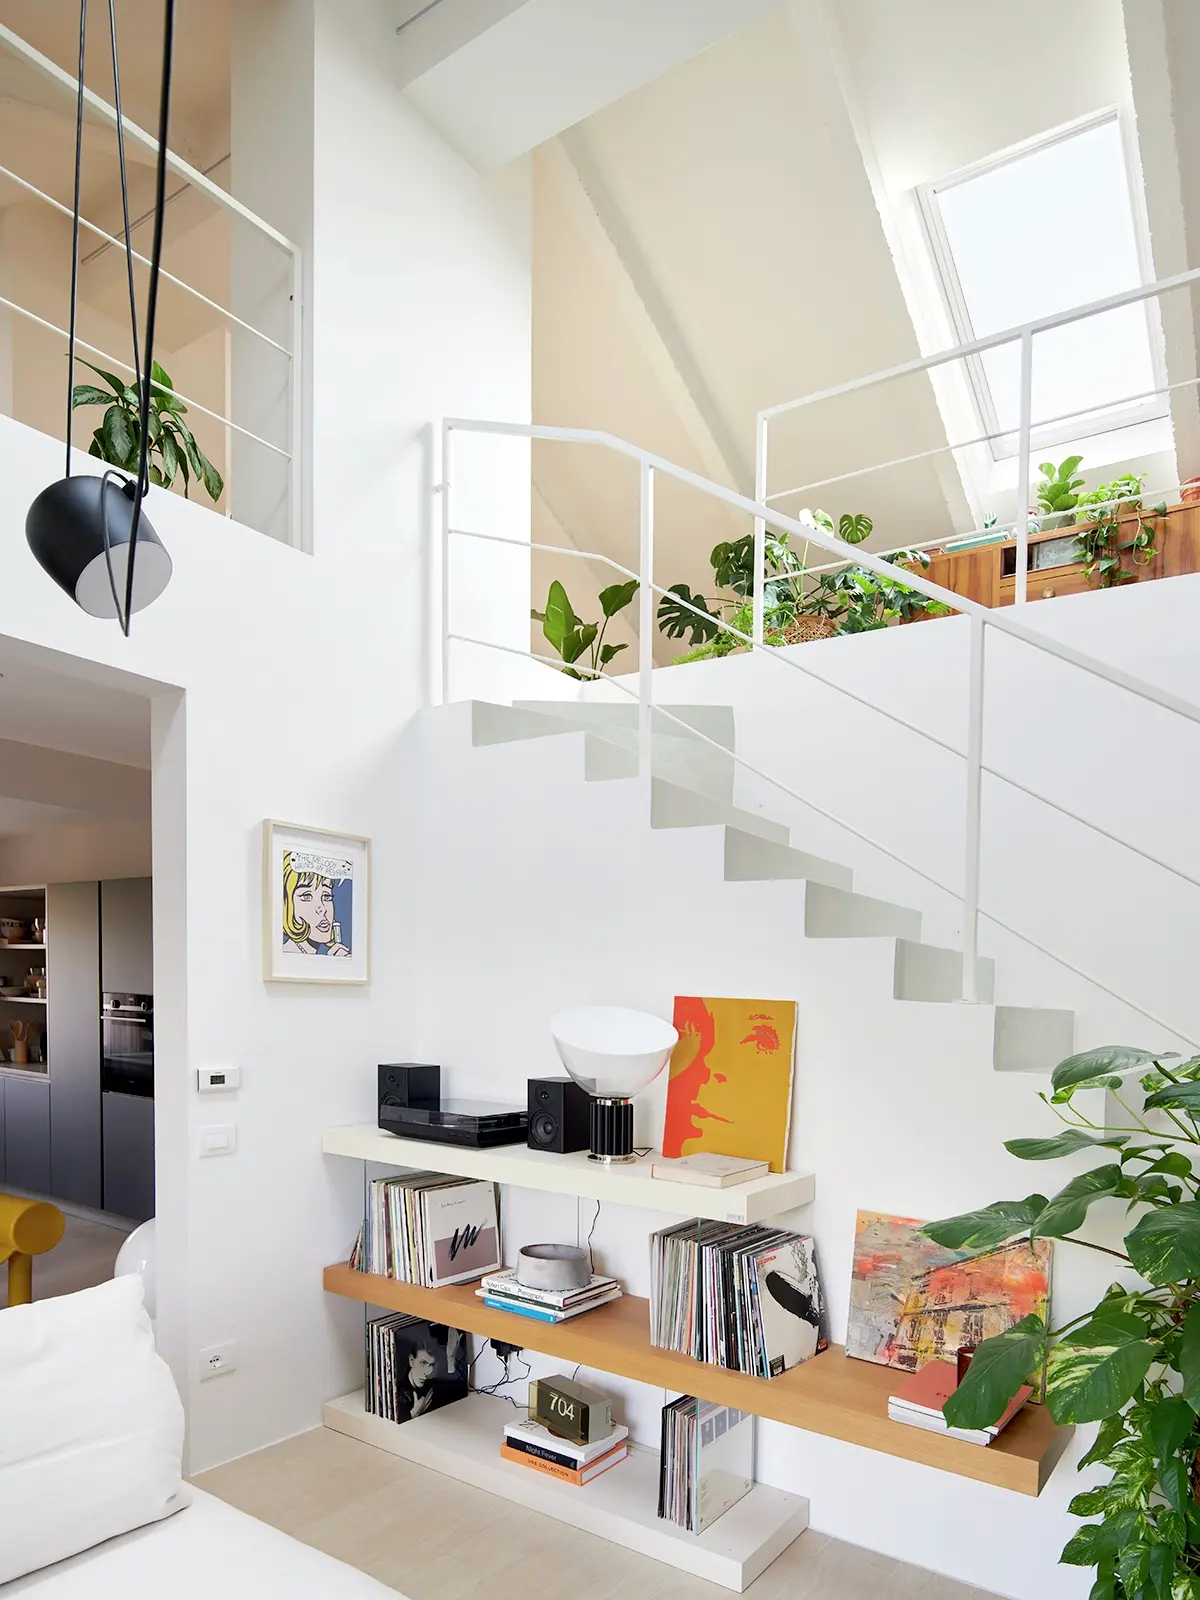 Zona scala luminosa con finestra per tetti VELUX, scaffali in legno, piante e vista nella cucina.